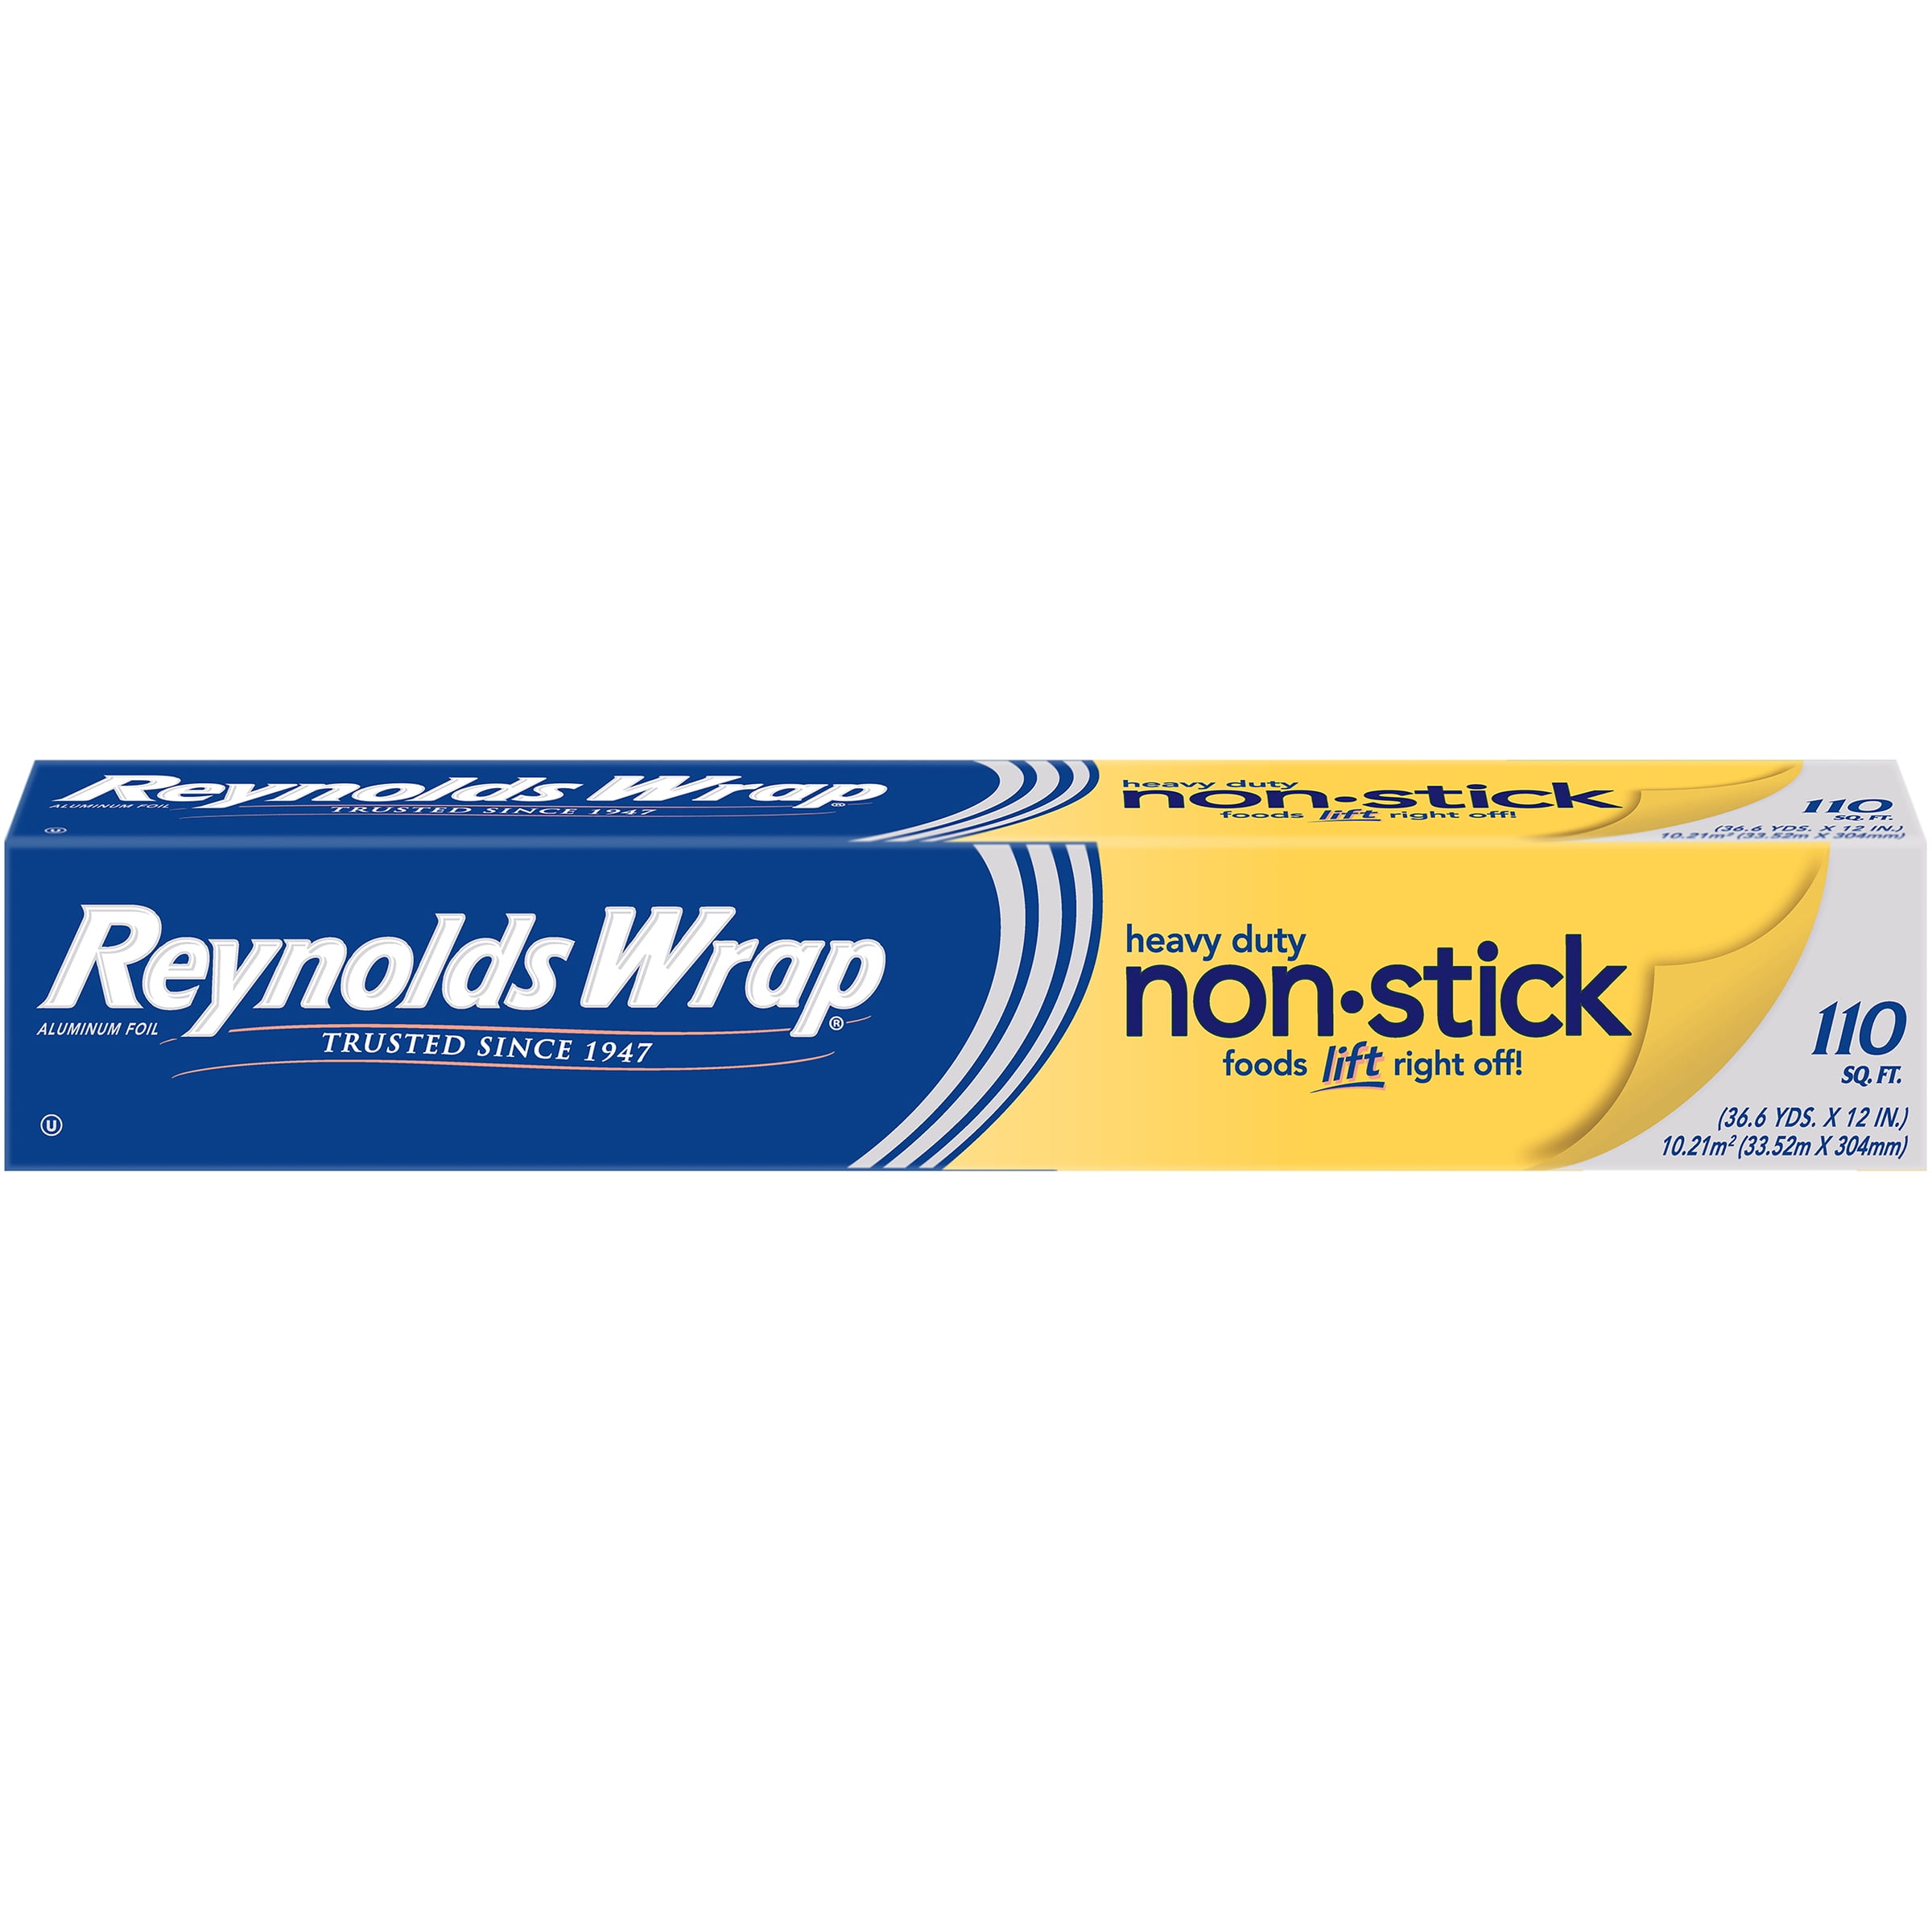 Reynolds Wrap® Non-Stick Aluminum Foil, 50 sq ft - Fry's Food Stores